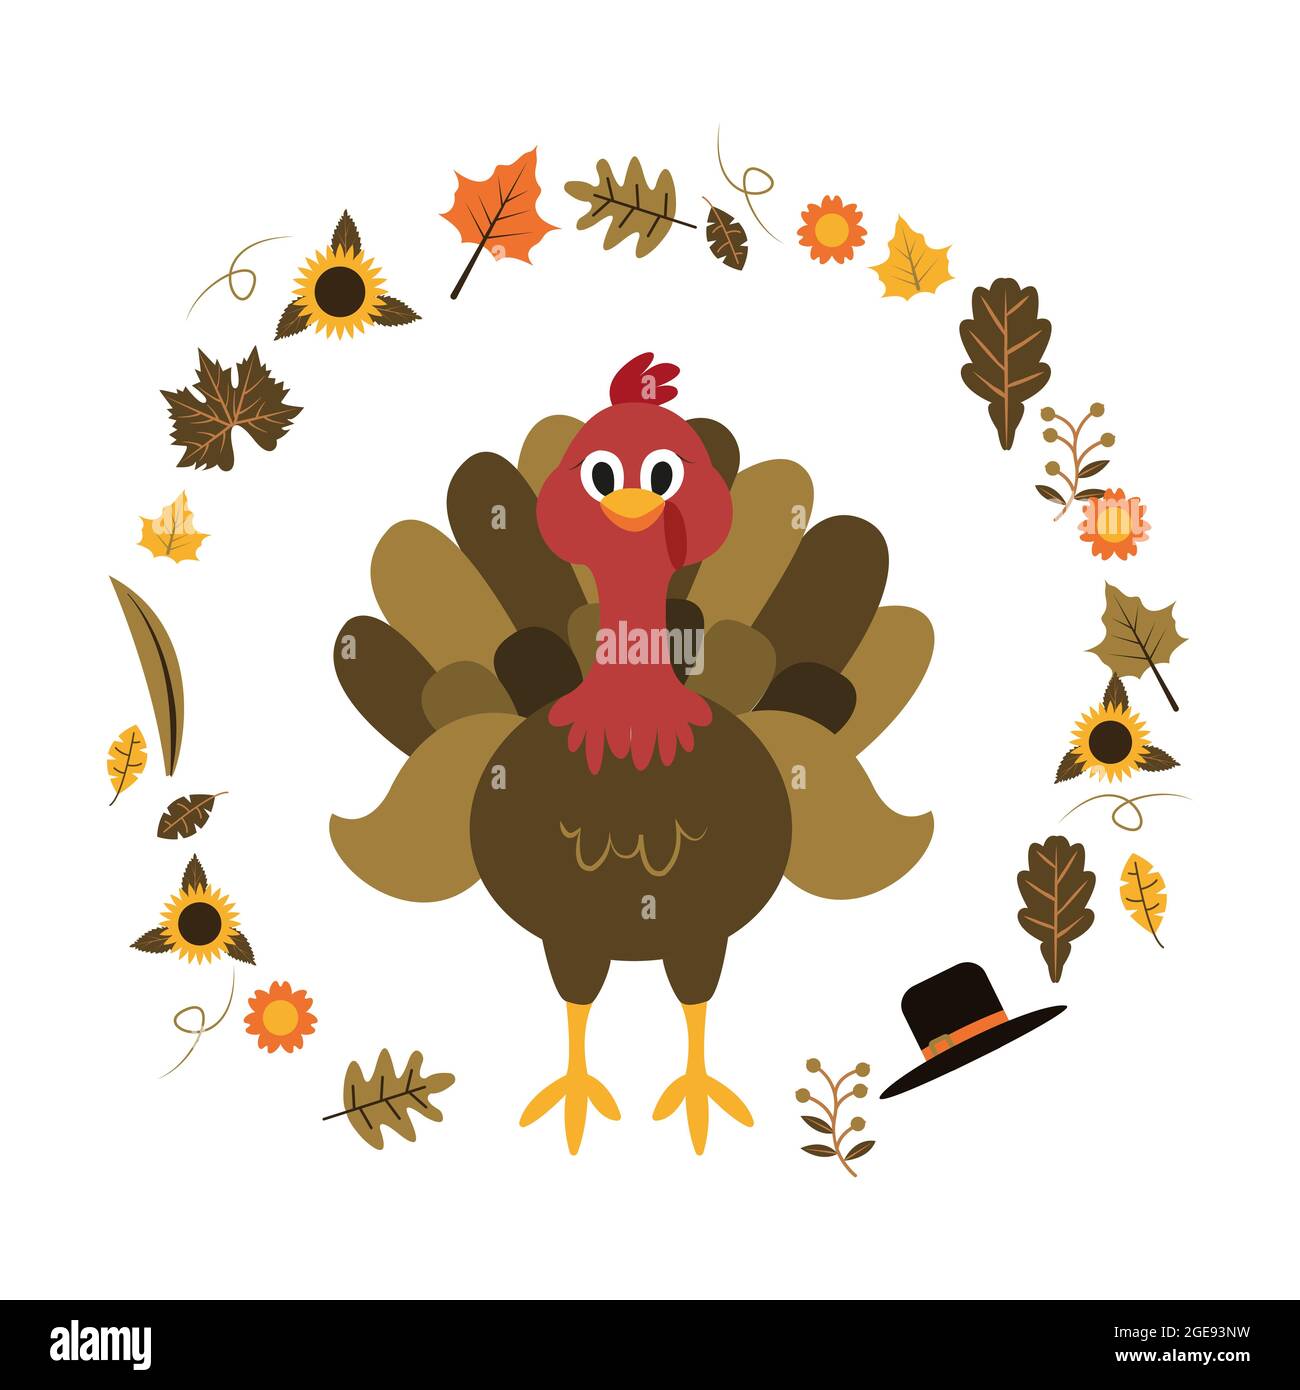 Turkey Happy Thanksgiving Day Autumn Fall Season Flat Illustration Stock Vector